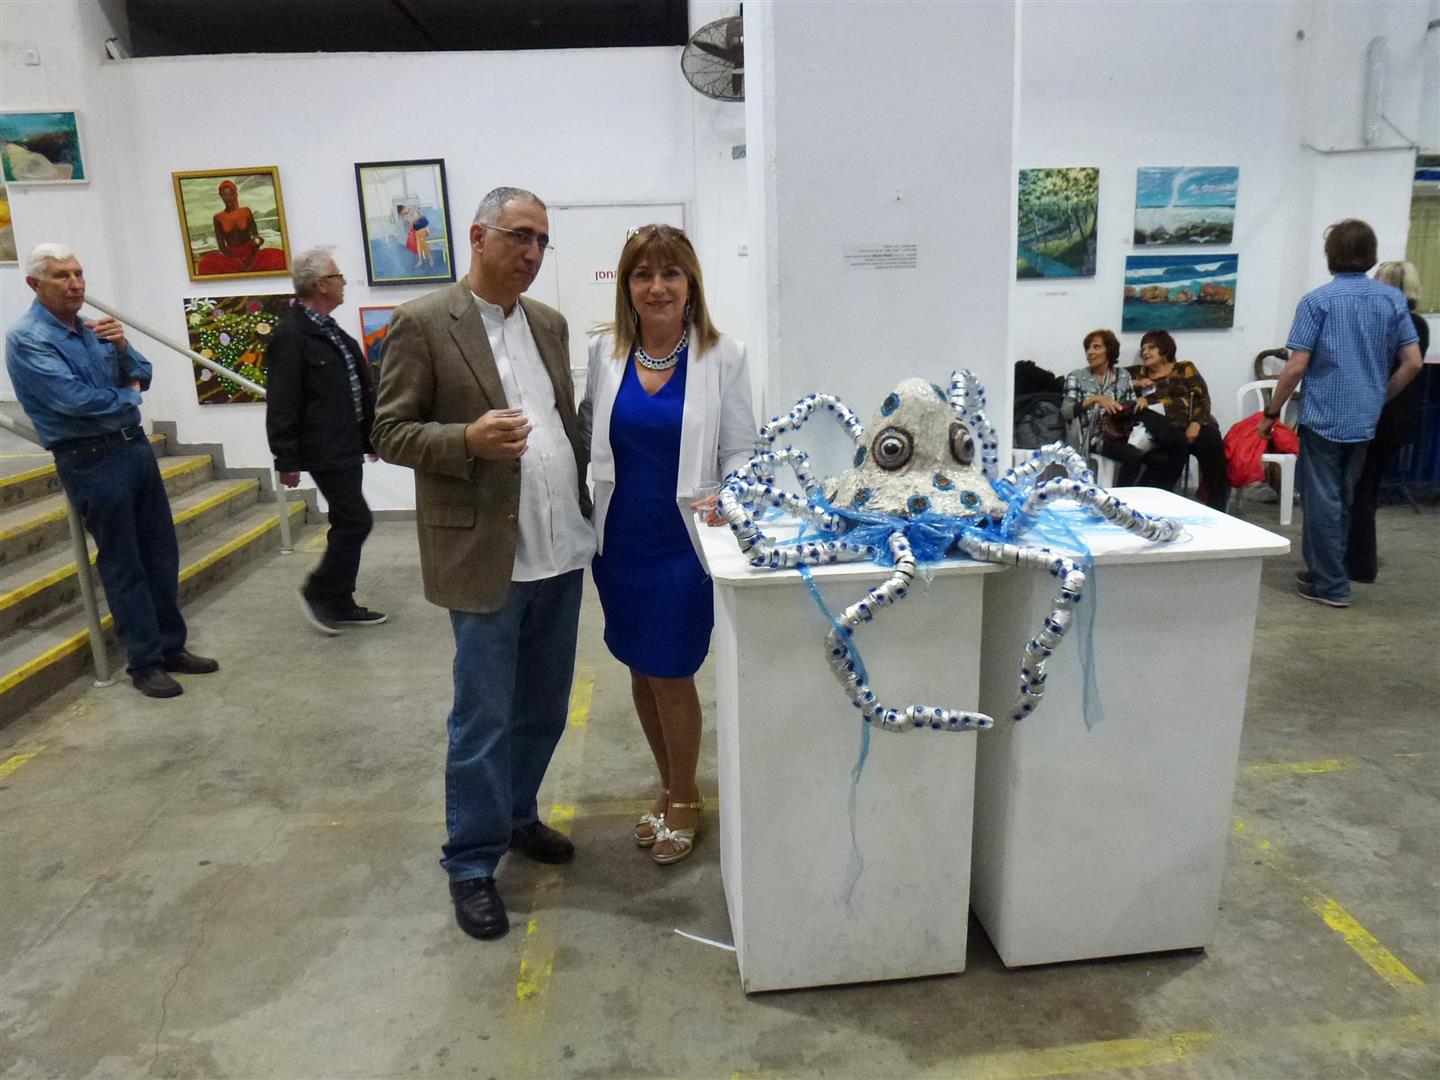 עם מיימון פאר מאגודת אמני ישראל באירוע הפתיחה לתערוכה האקטיבית אביב 2017